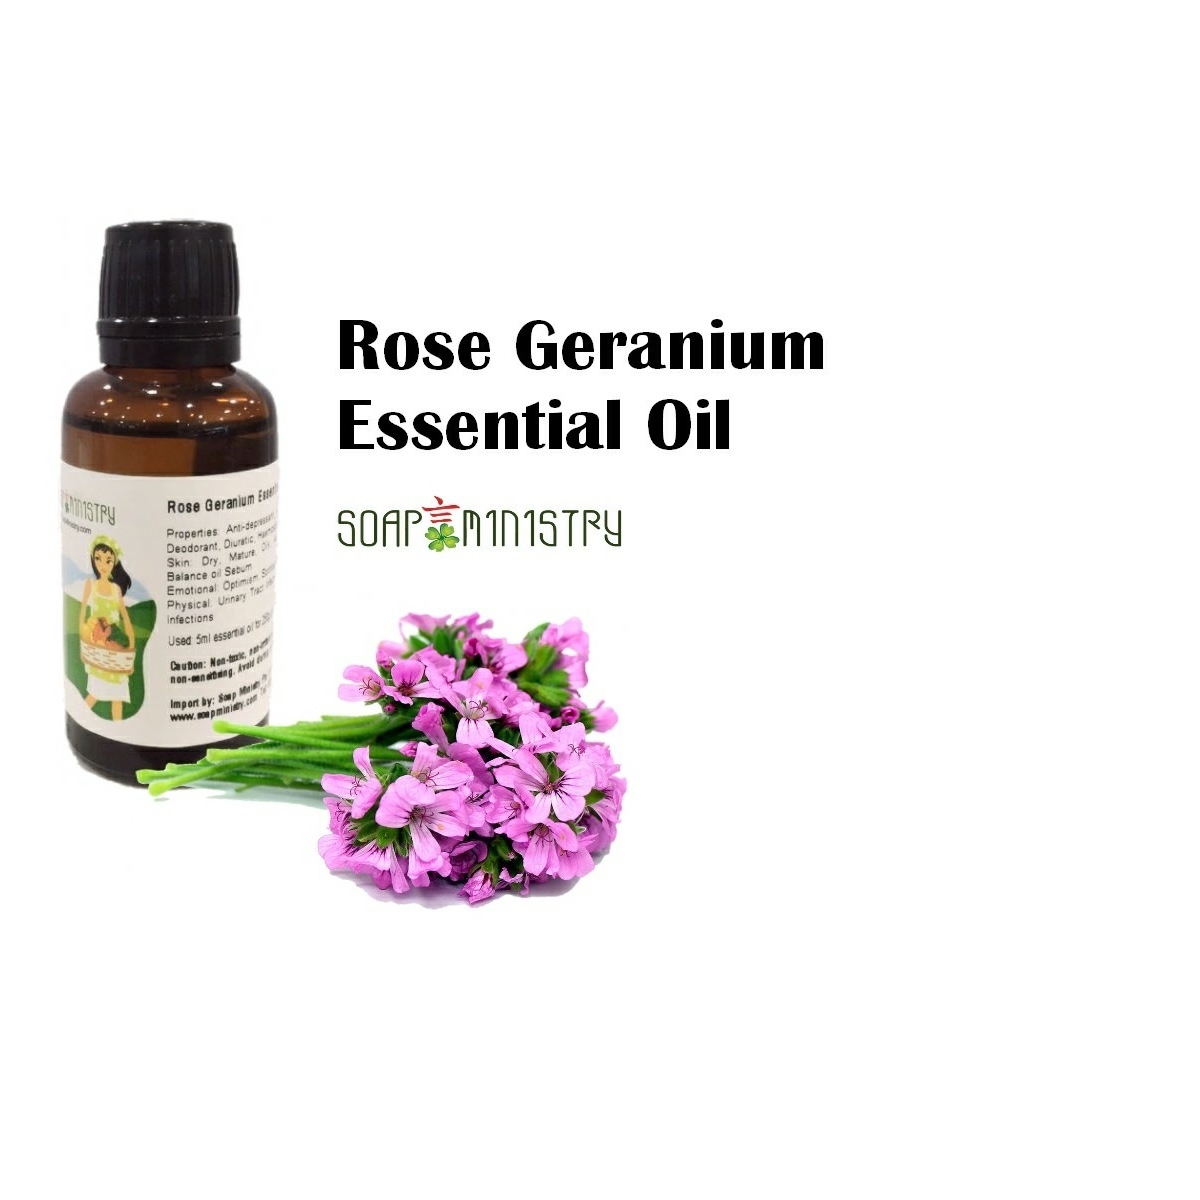 Rose Geranium Essential Oil 100ml